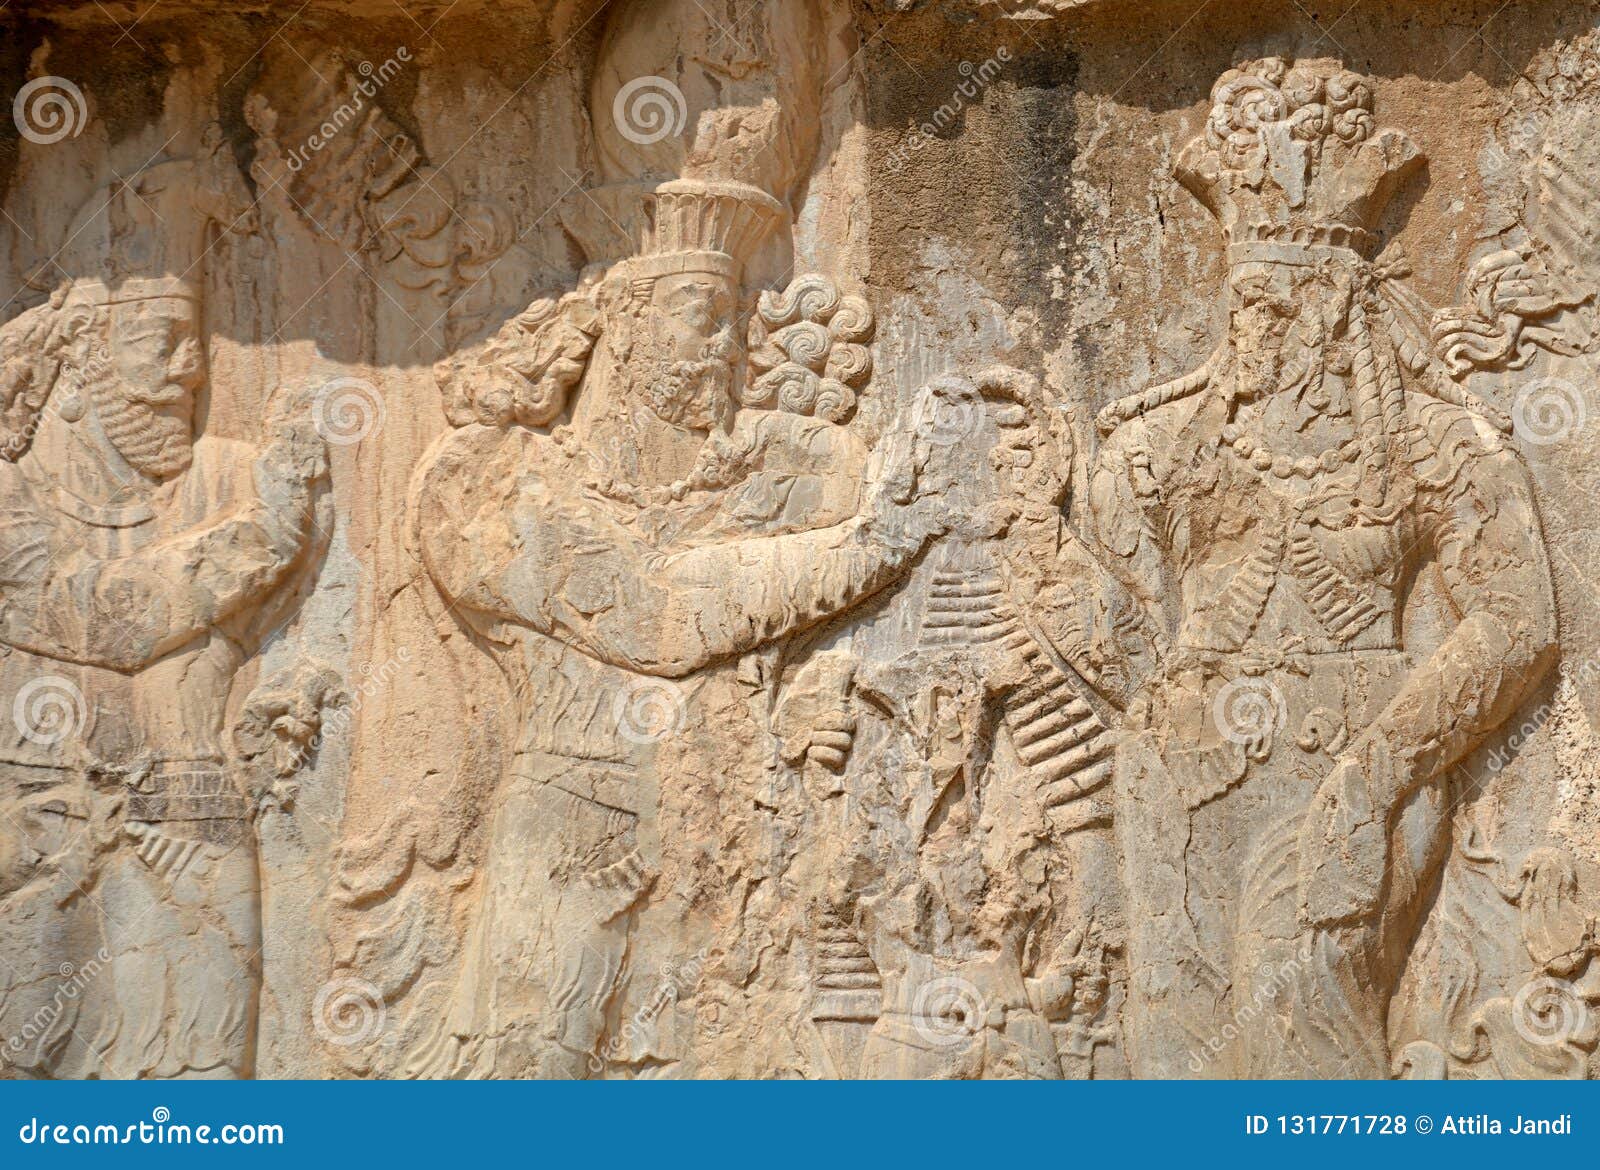 sasanian relief, naqsh-e rustam, iran